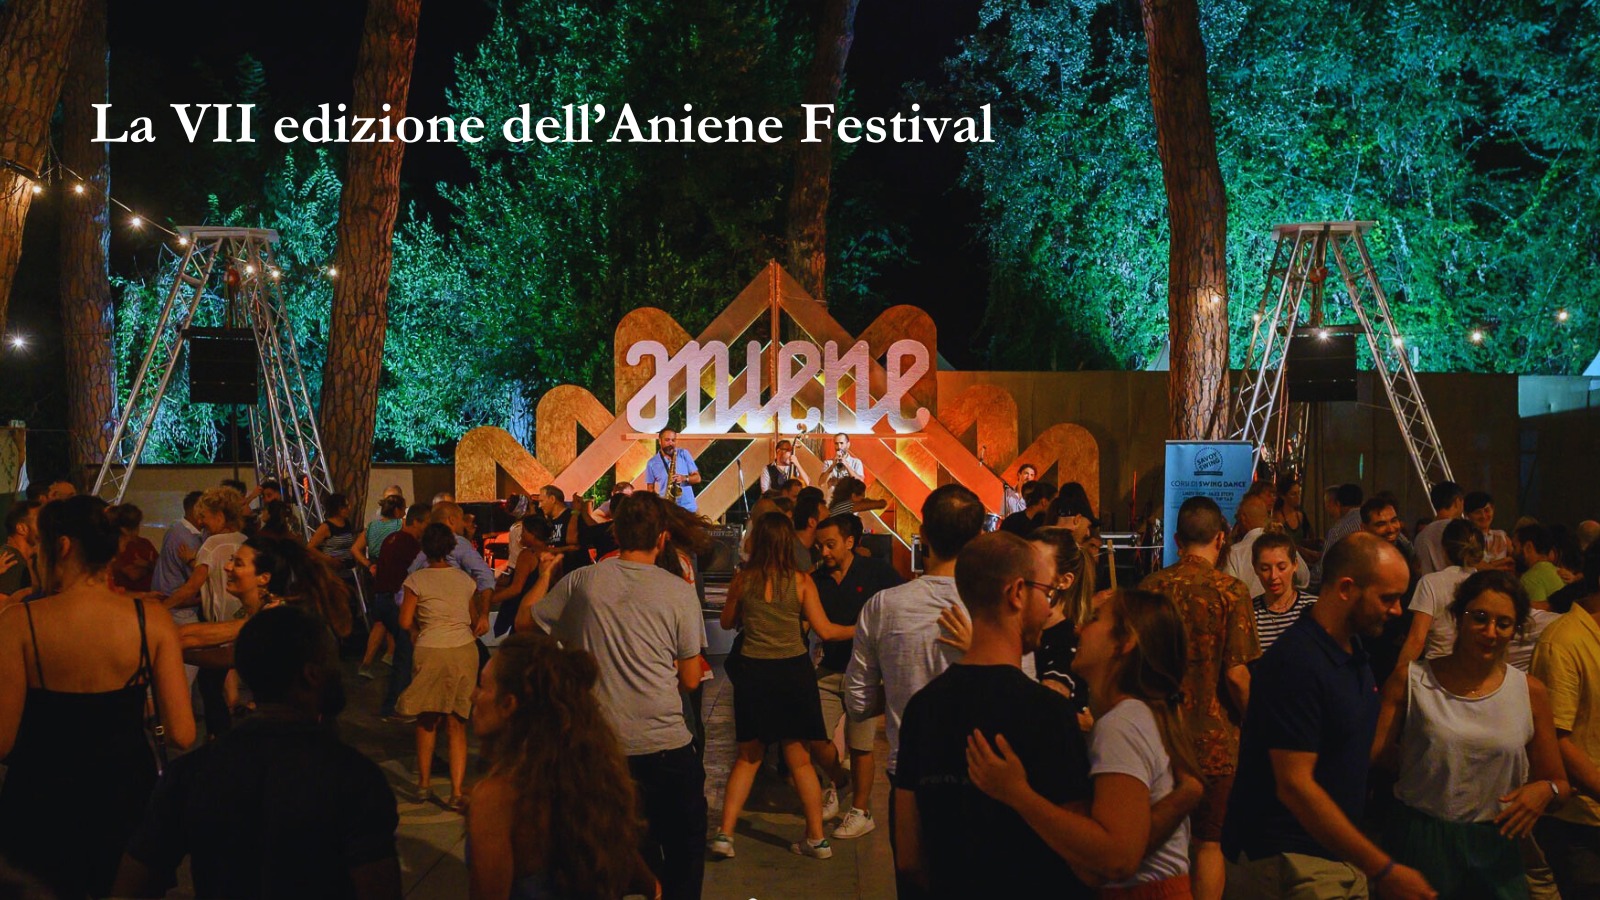 La VII edizione dell’Aniene Festival